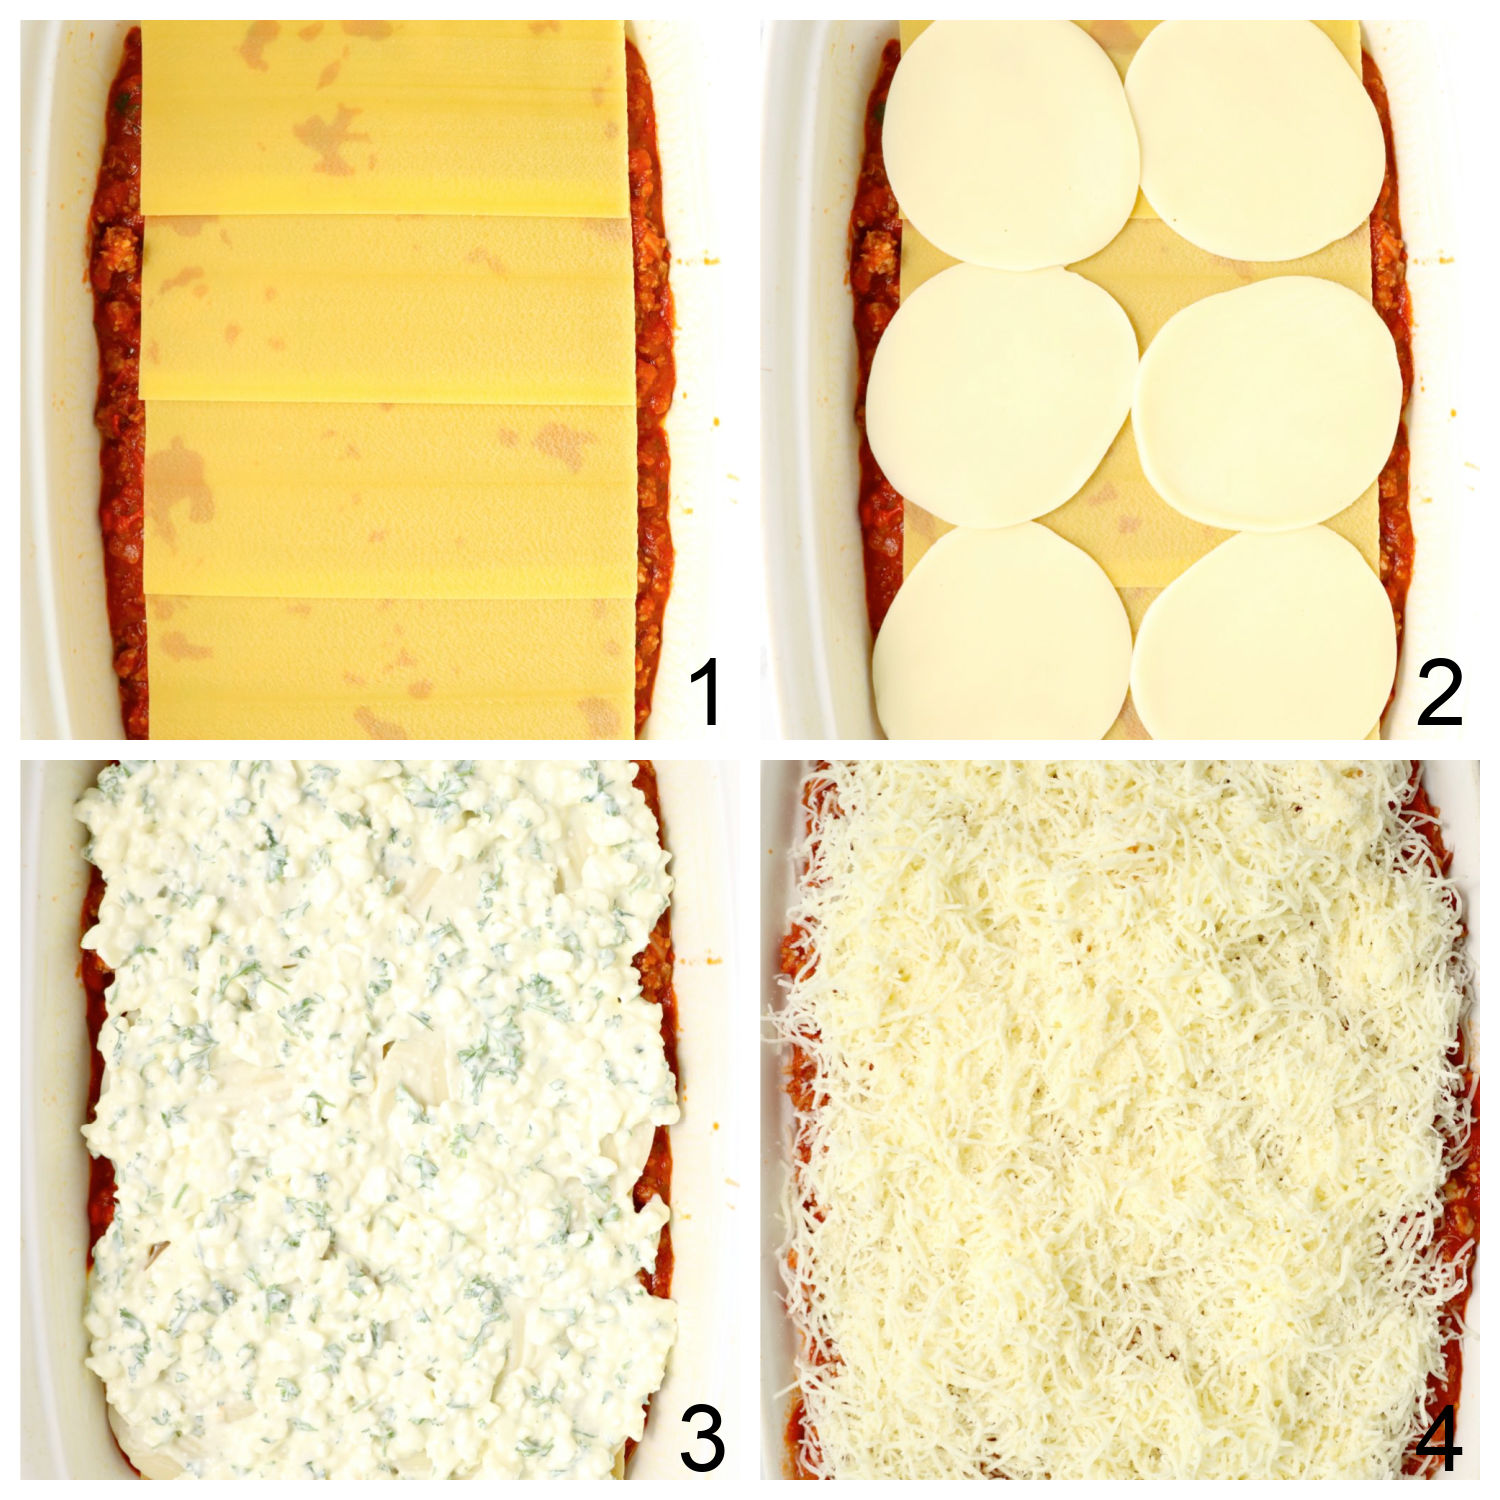 steps for layering lasagna